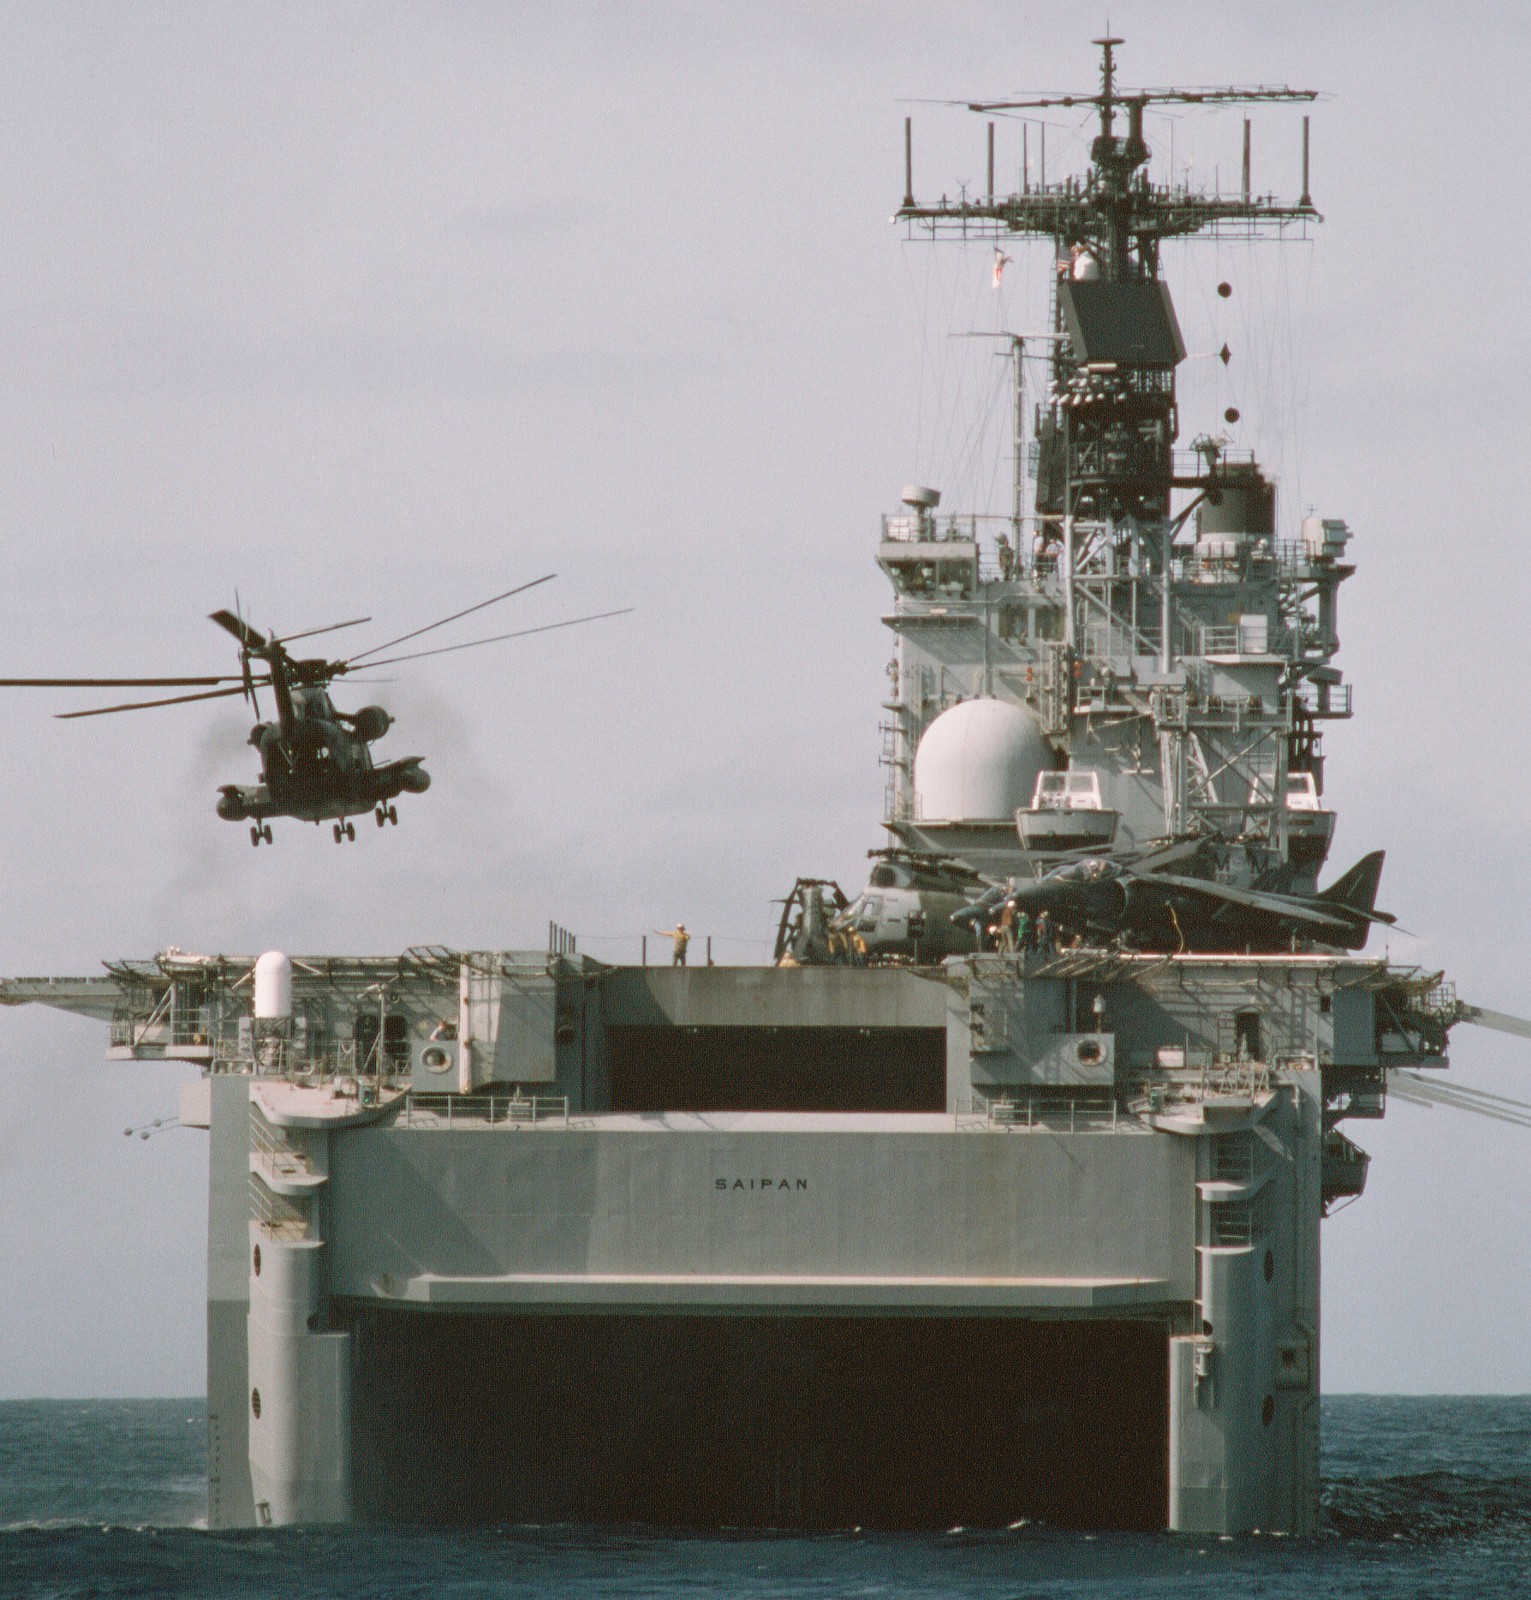 lha-2 uss saipan tarawa class amphibious assault ship us navy 22nd meu hmm-261 usmc operation sharp edge liberia 84